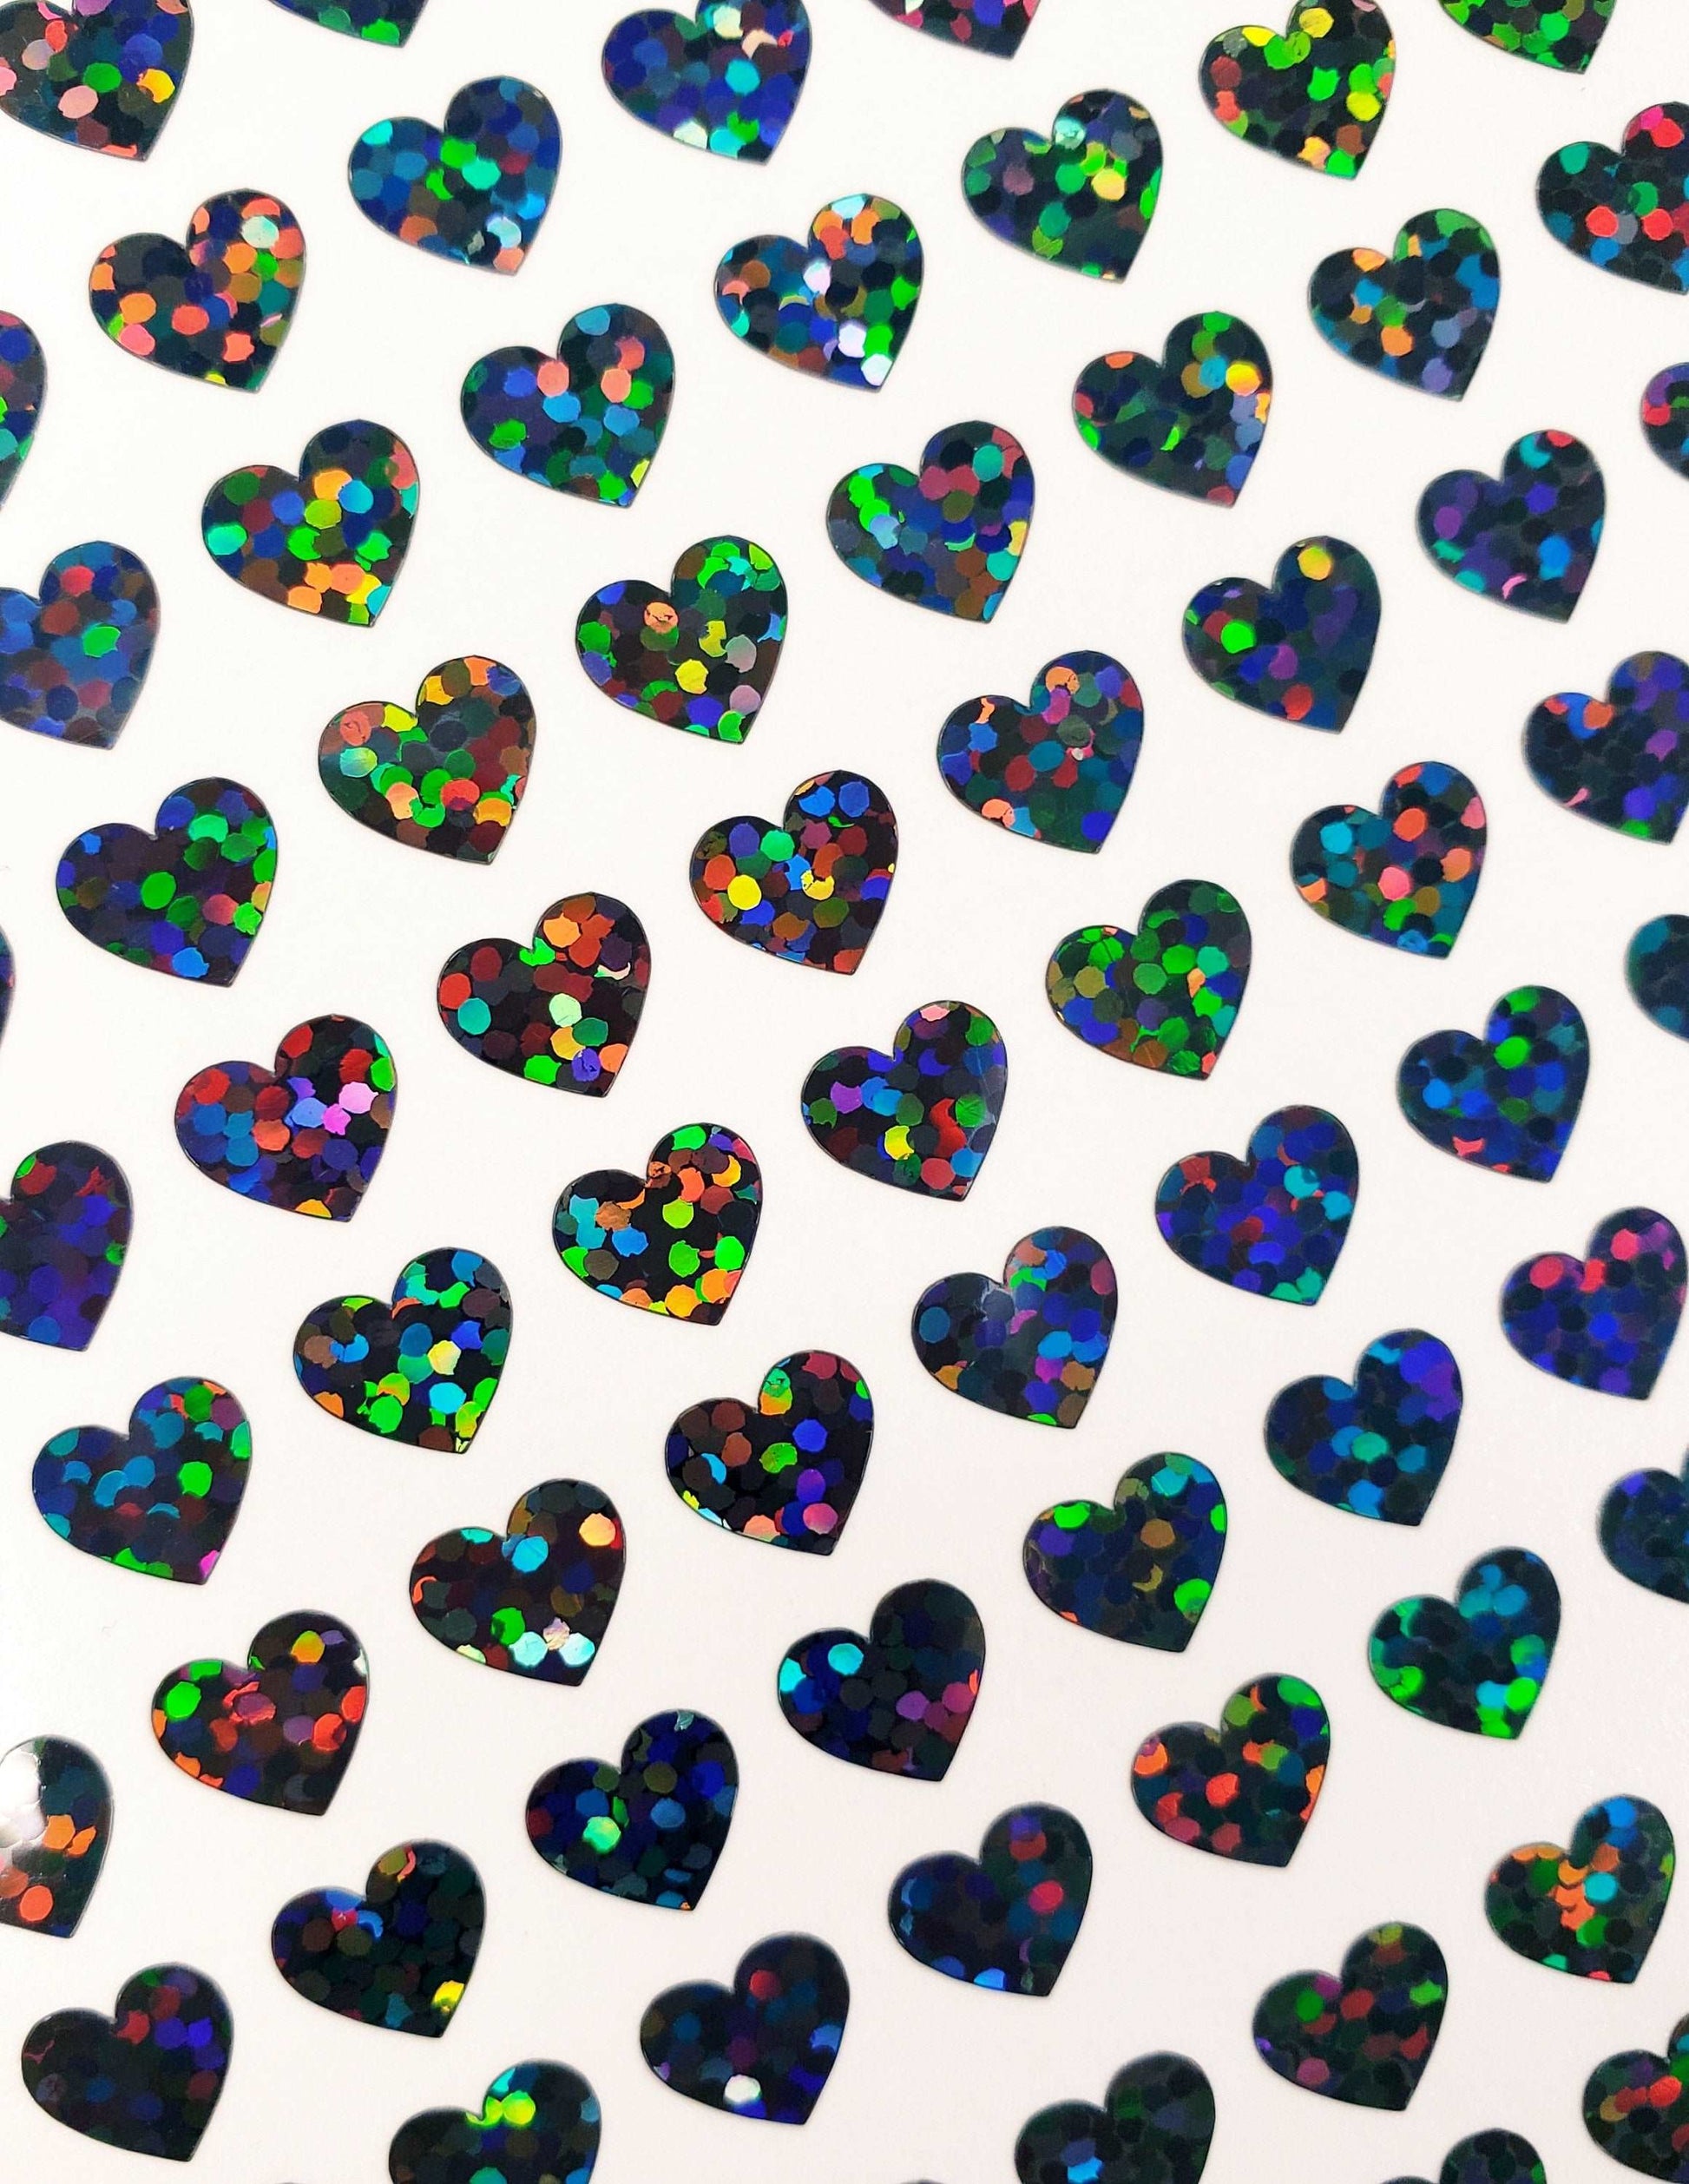 Small Black Hearts Sticker Sheet, set of 258 hearts.